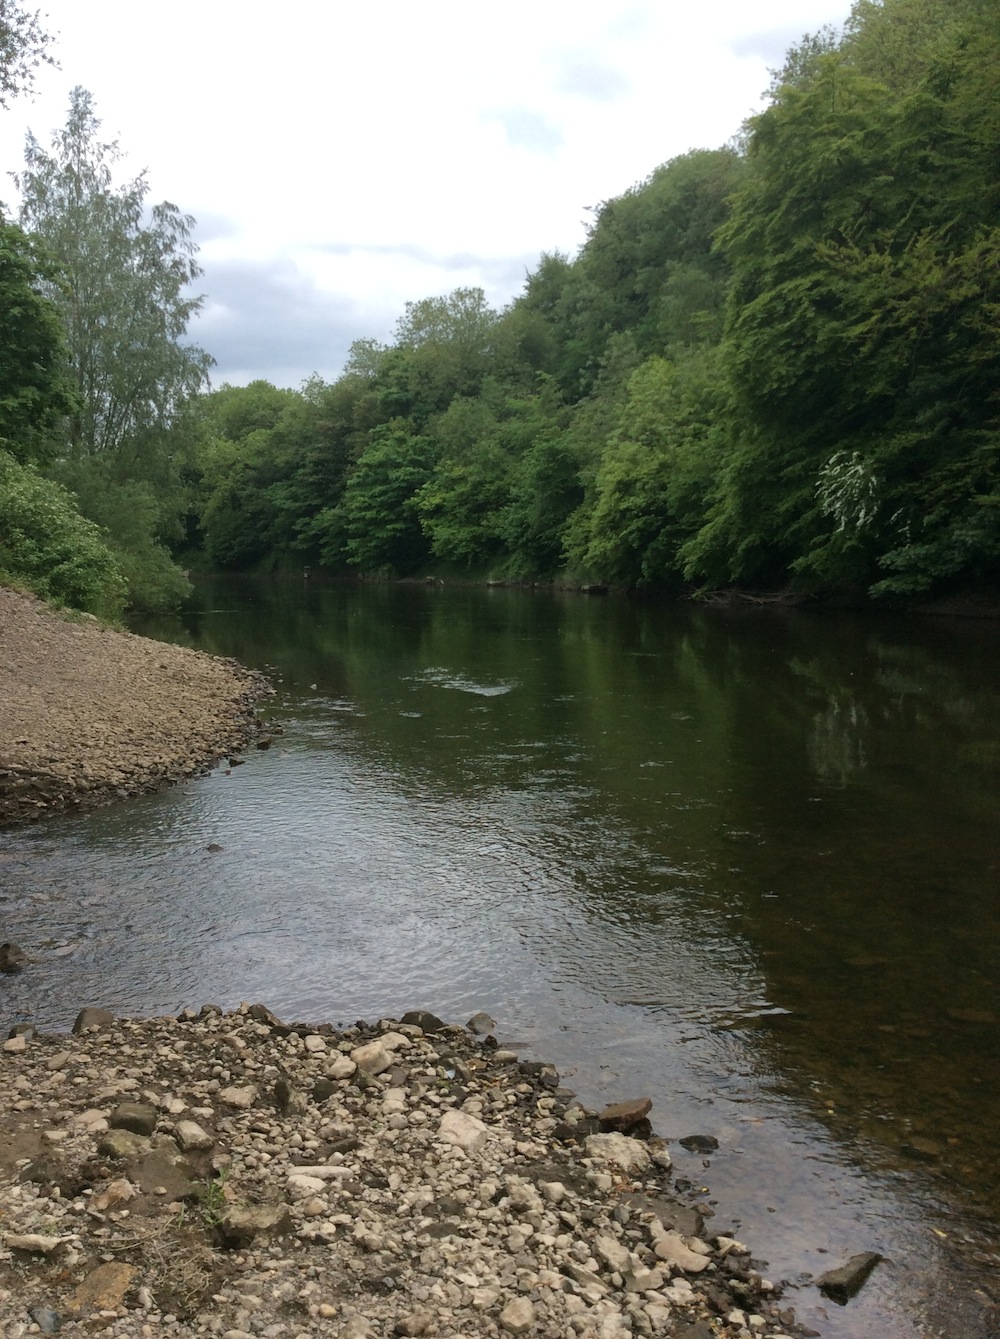 River Severn at Coalbrrokdale where Webb learnt to swim